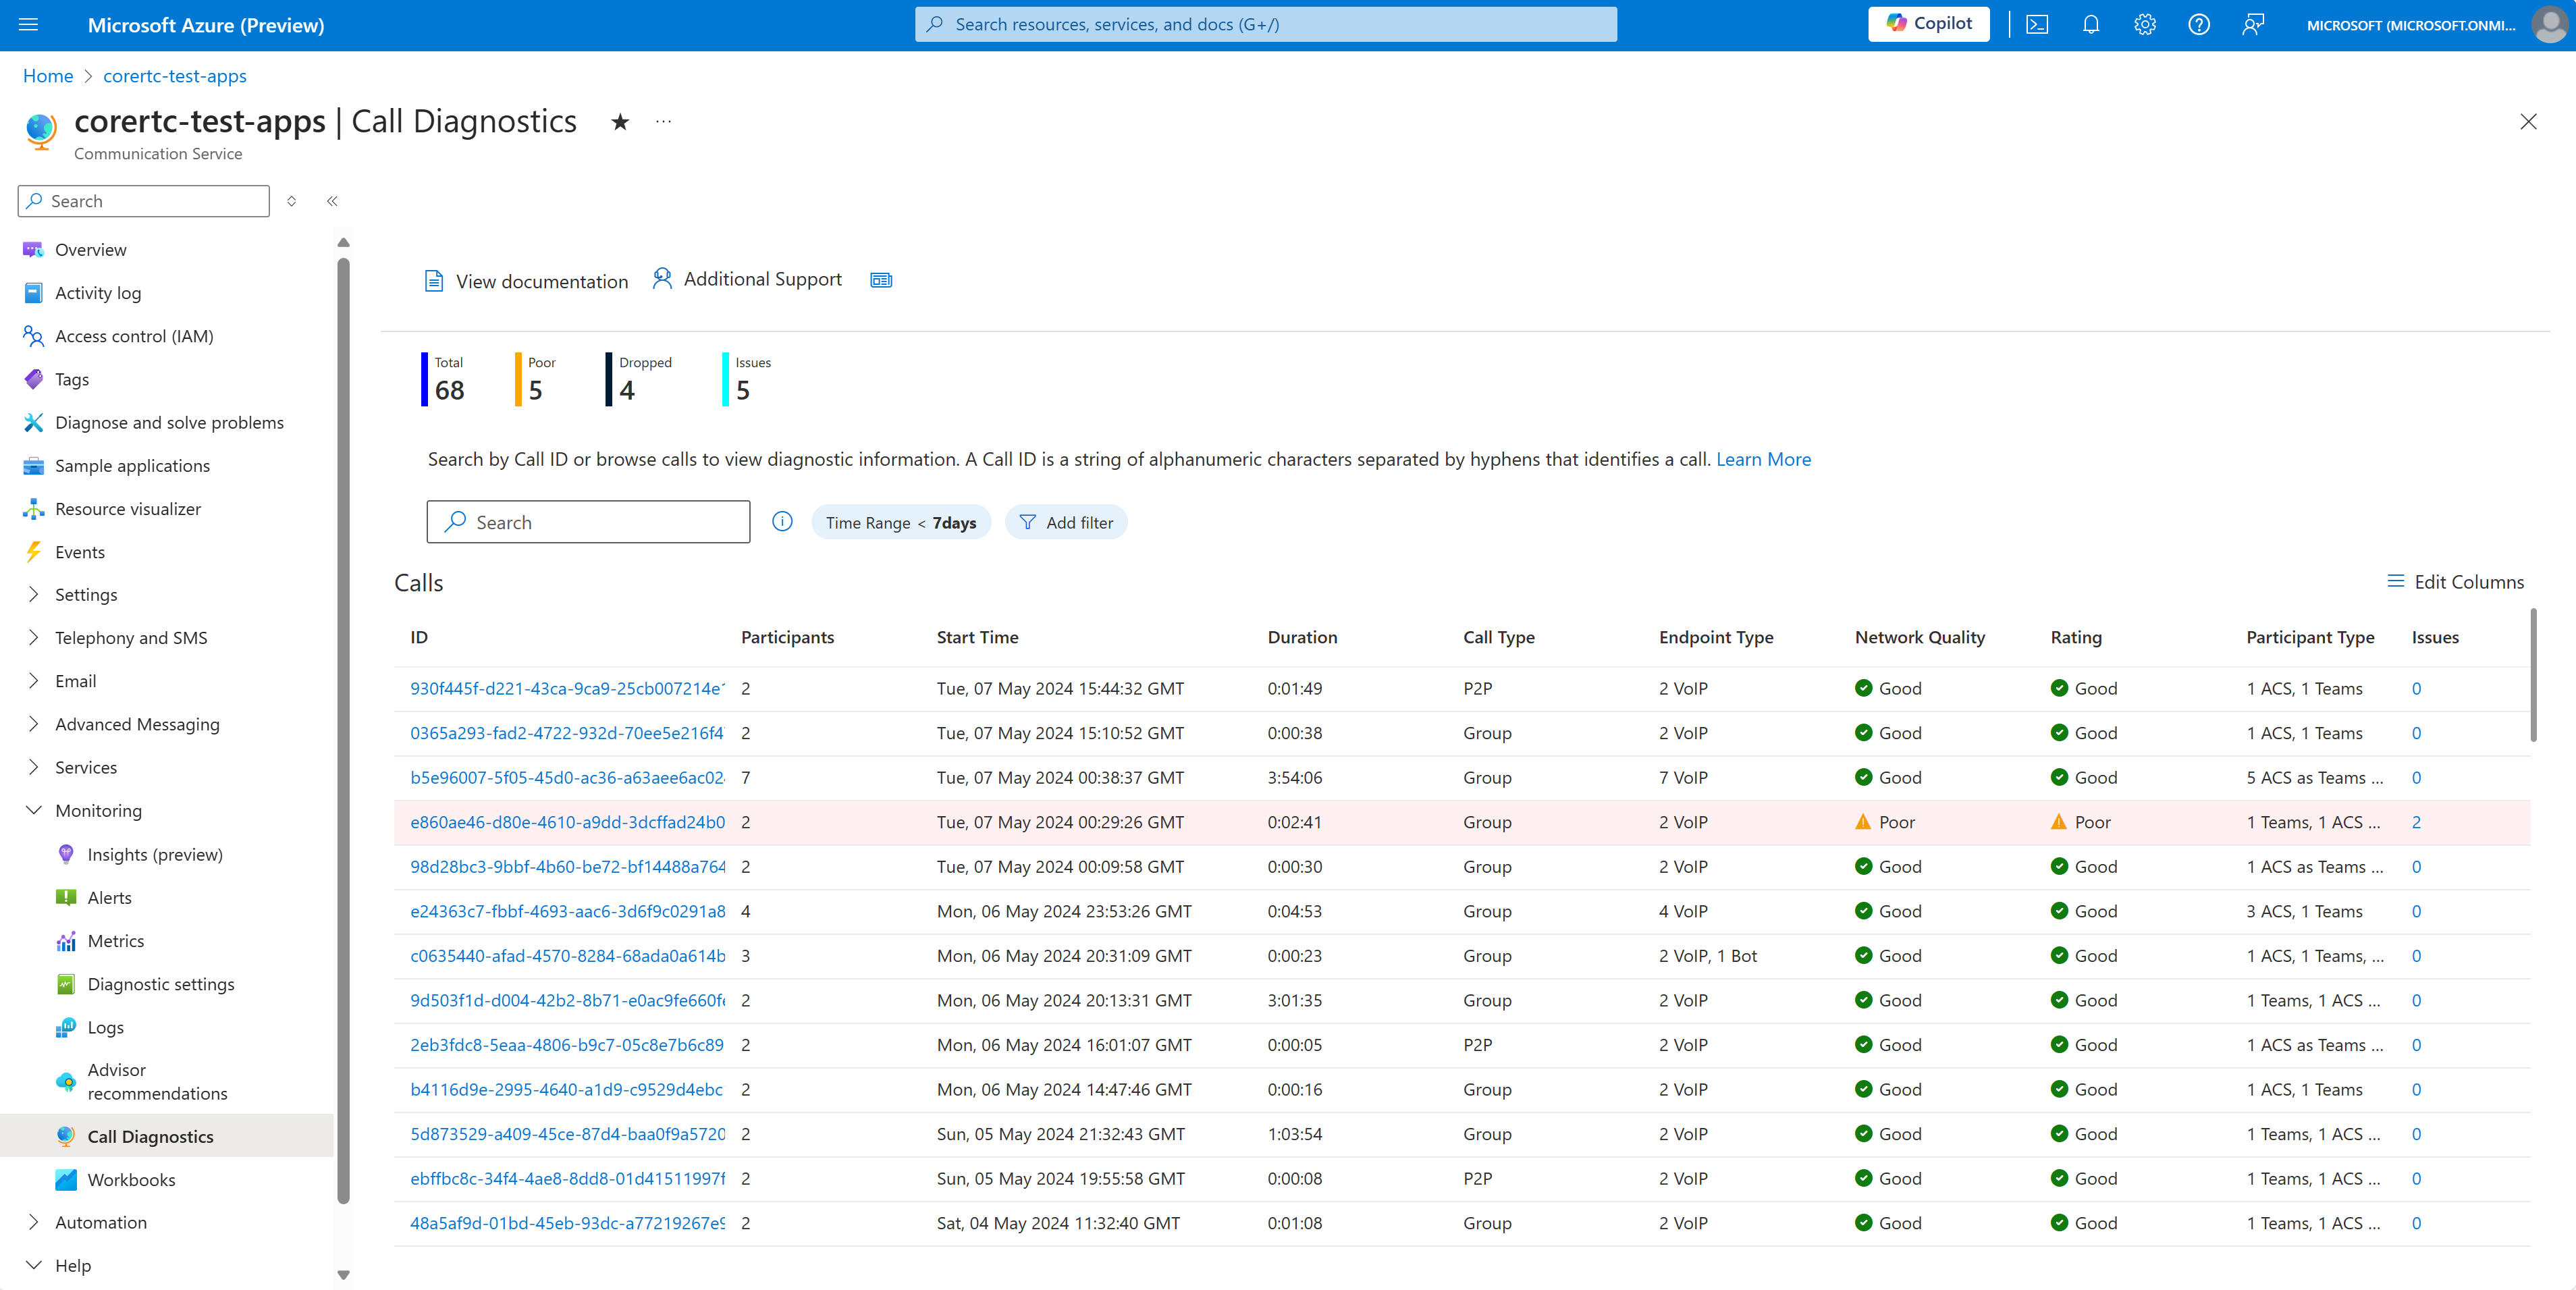 Captura de tela da Pesquisa de Chamadas de Diagnóstico de Chamadas mostrando chamadas recentes para o recurso dos Serviços de Comunicação do Azure.